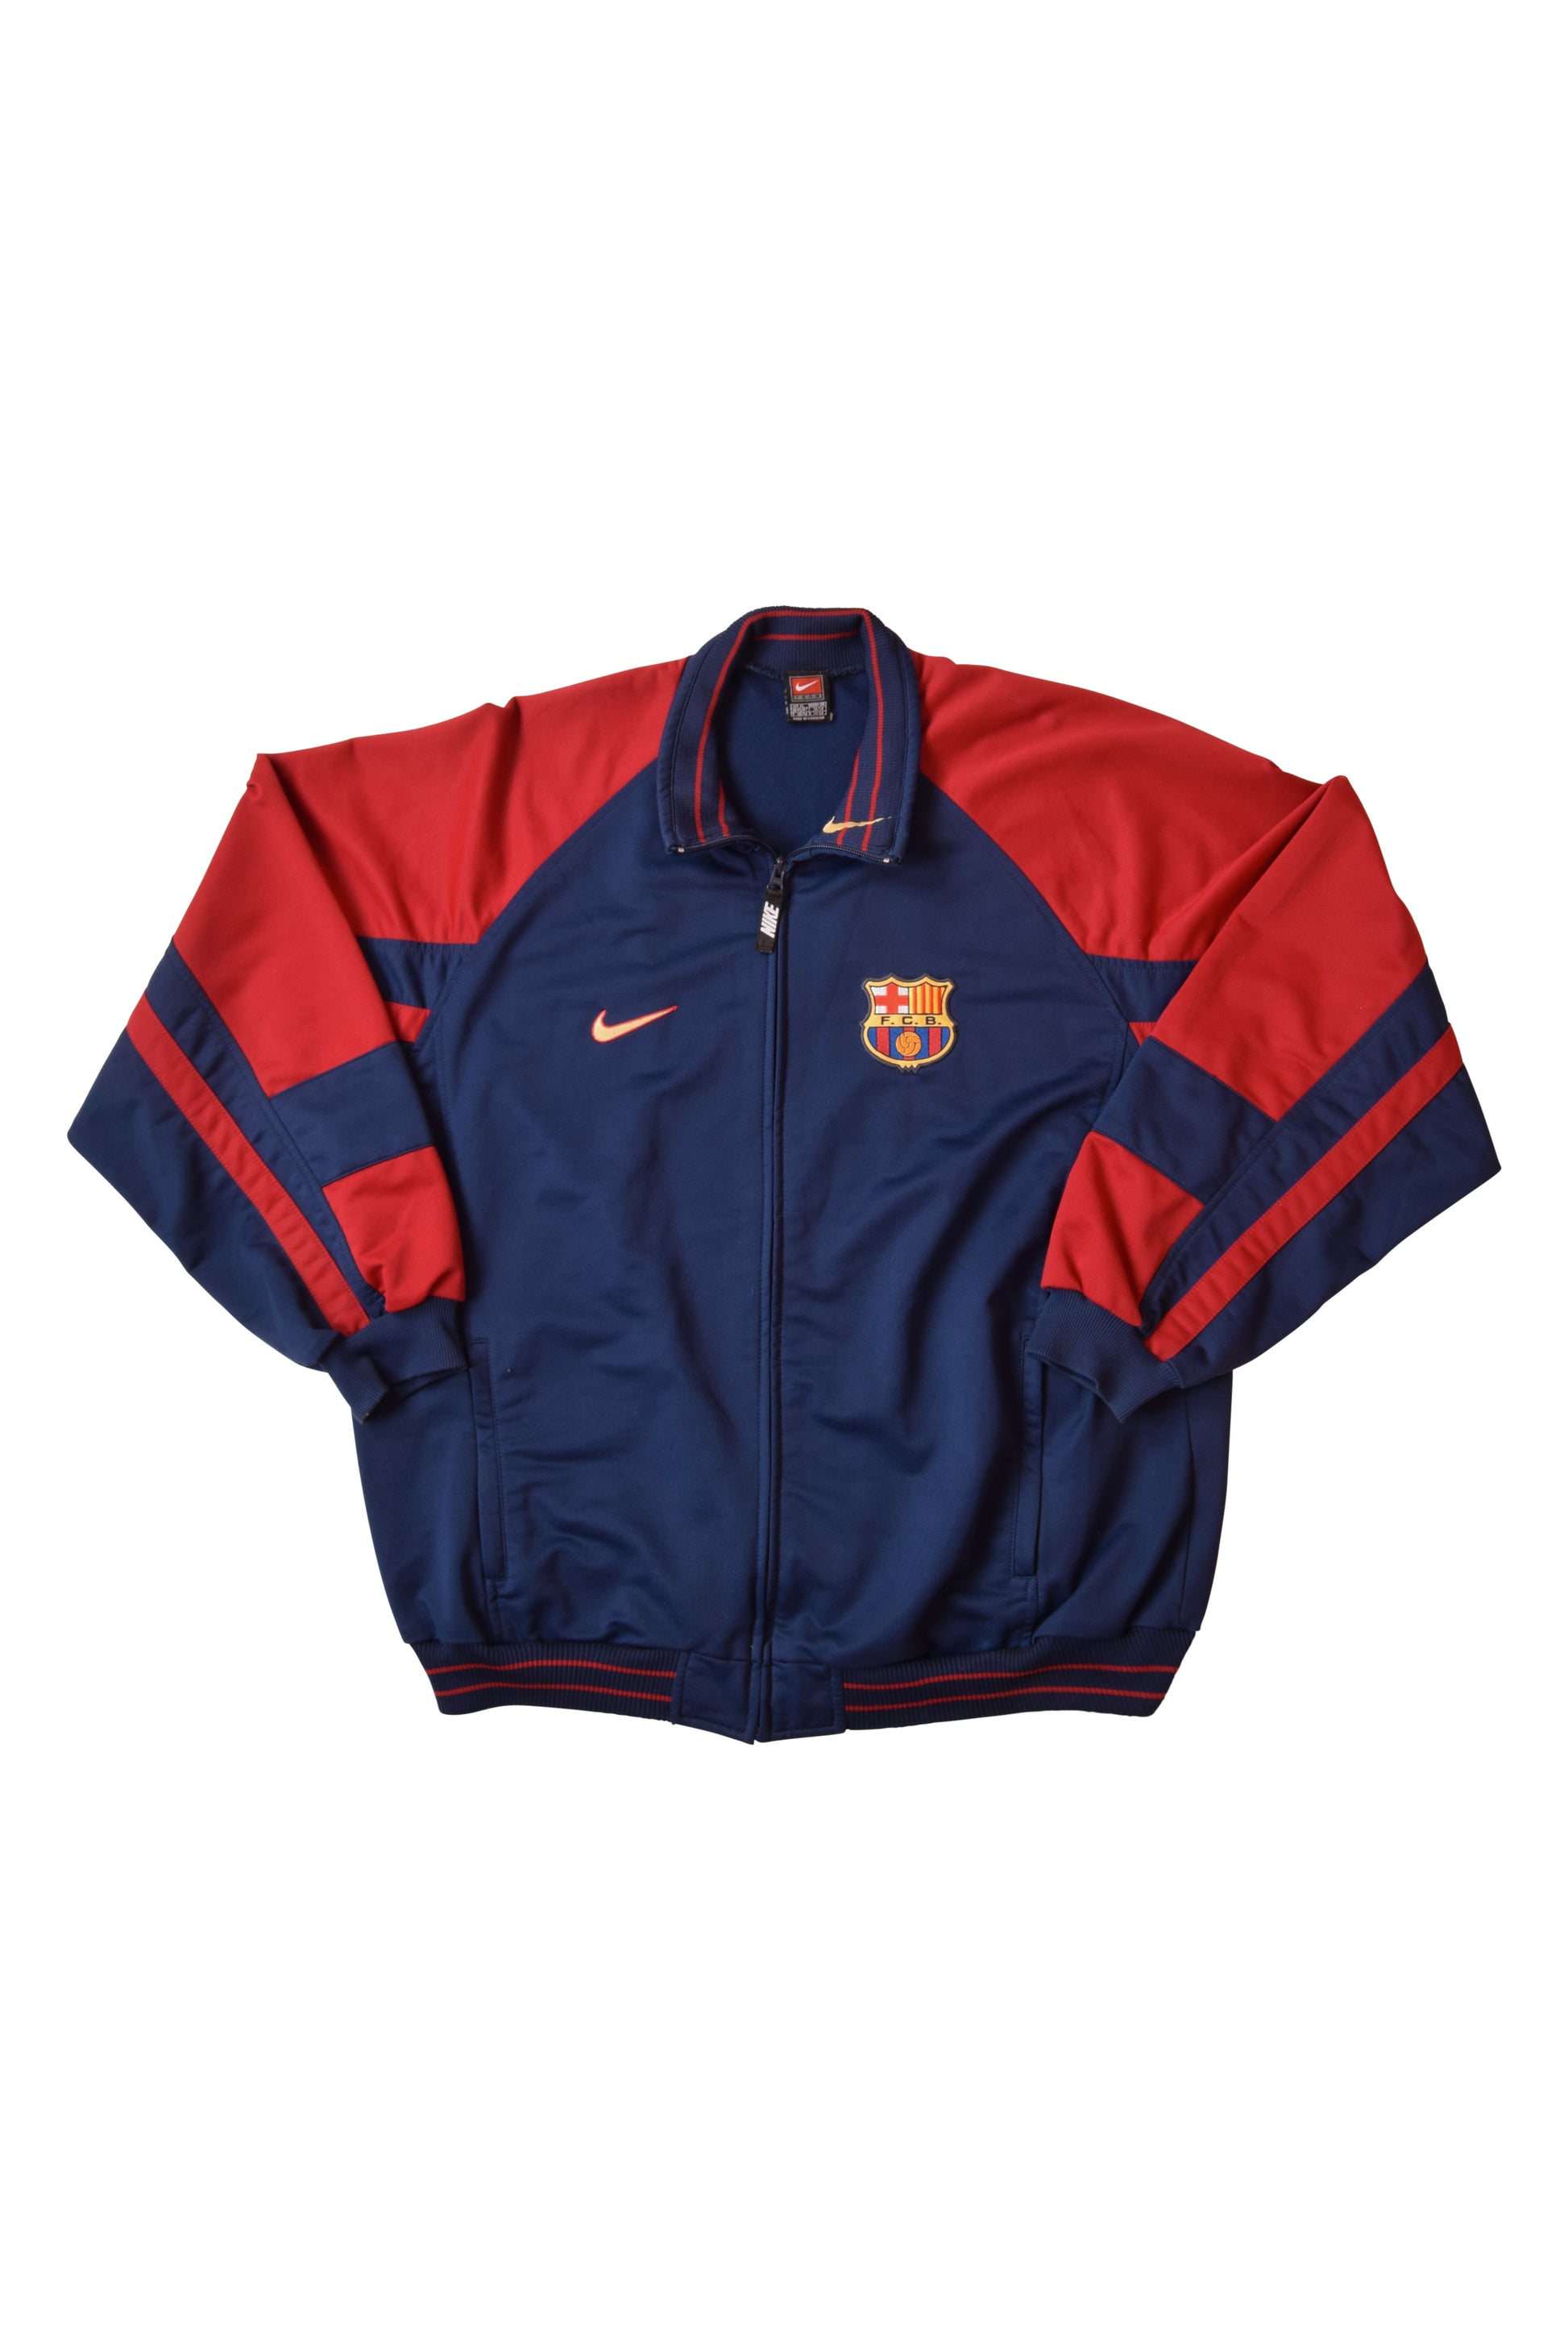 Vintage Barcelona 1998-1999 Nike Team Jacket / Track Top Size XL